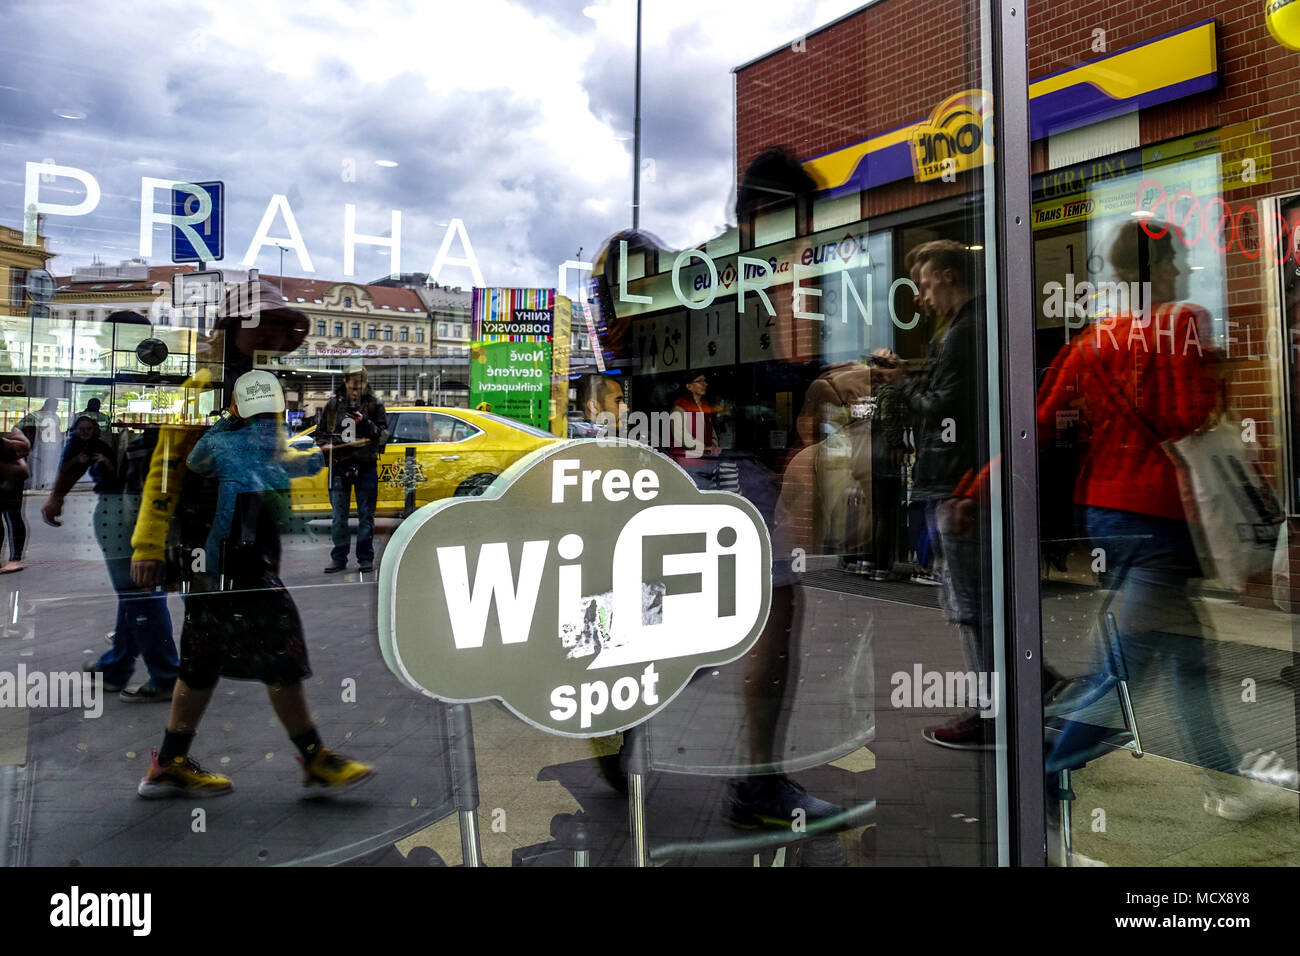 Prague Florenc bus Station reflet sur une porte vitrée, logo Wi-Fi gratuit spot, République tchèque Banque D'Images